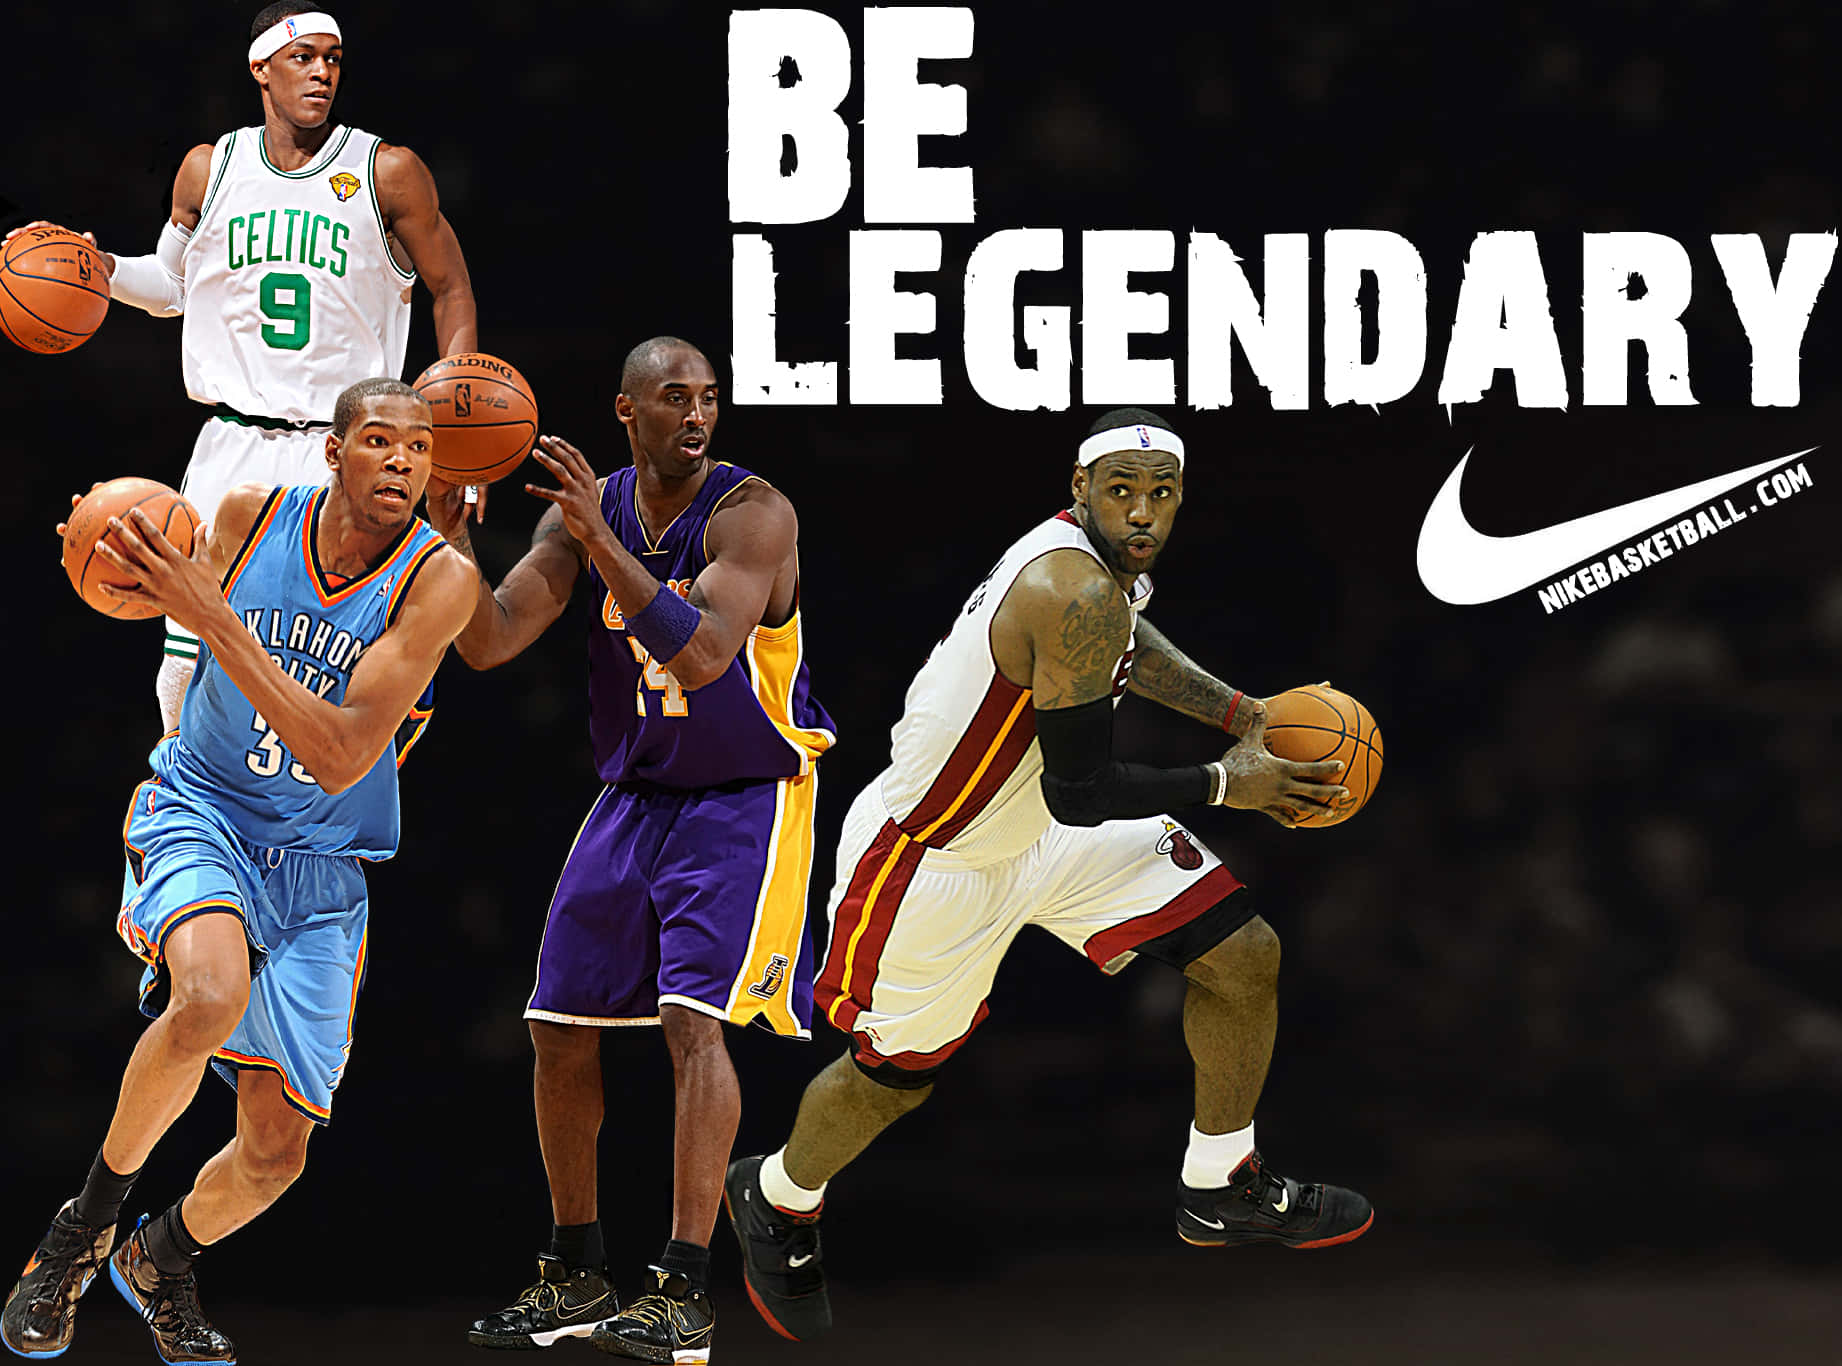 Seilegendäre Nike Basketball-wallpaper Wallpaper